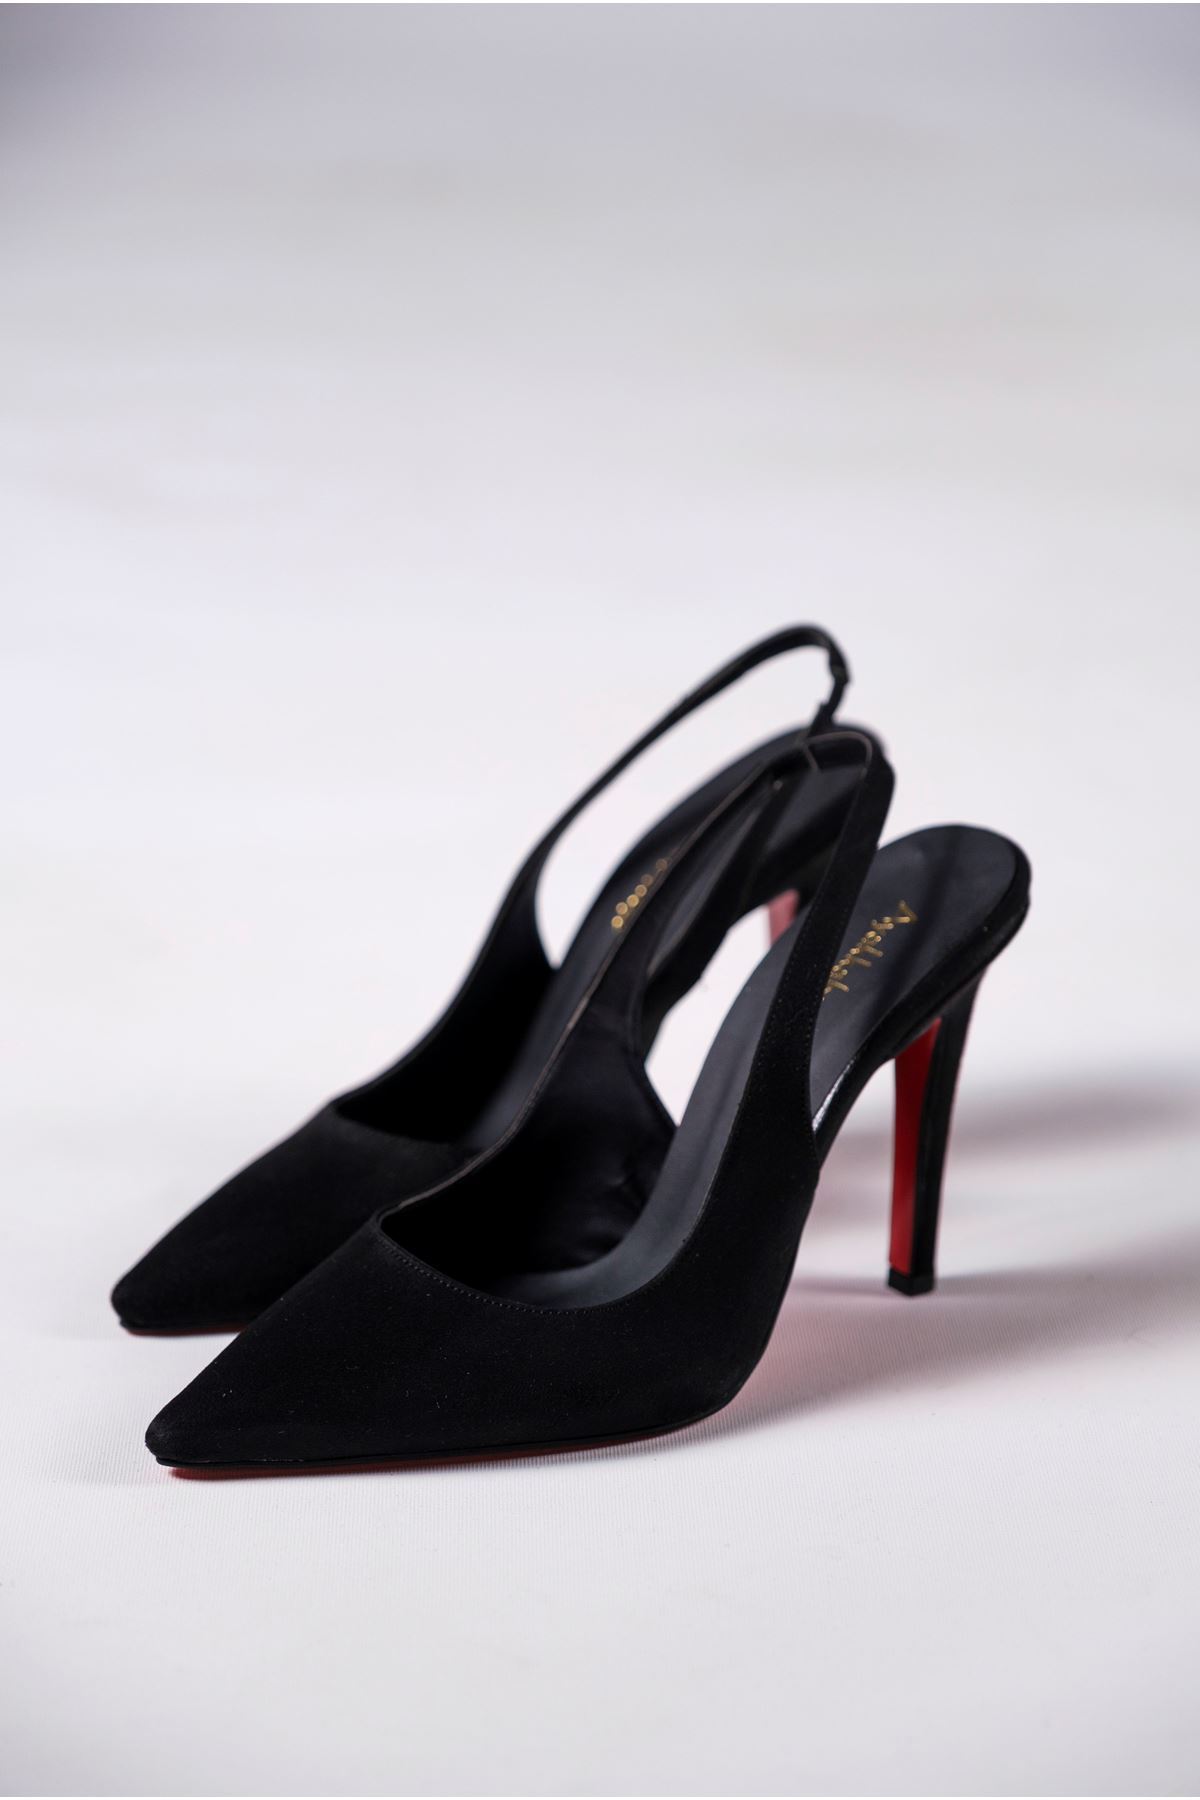 Siyah Süet Kadın Topuklu Özel Tasarım Ayakkabı Stiletto Madison